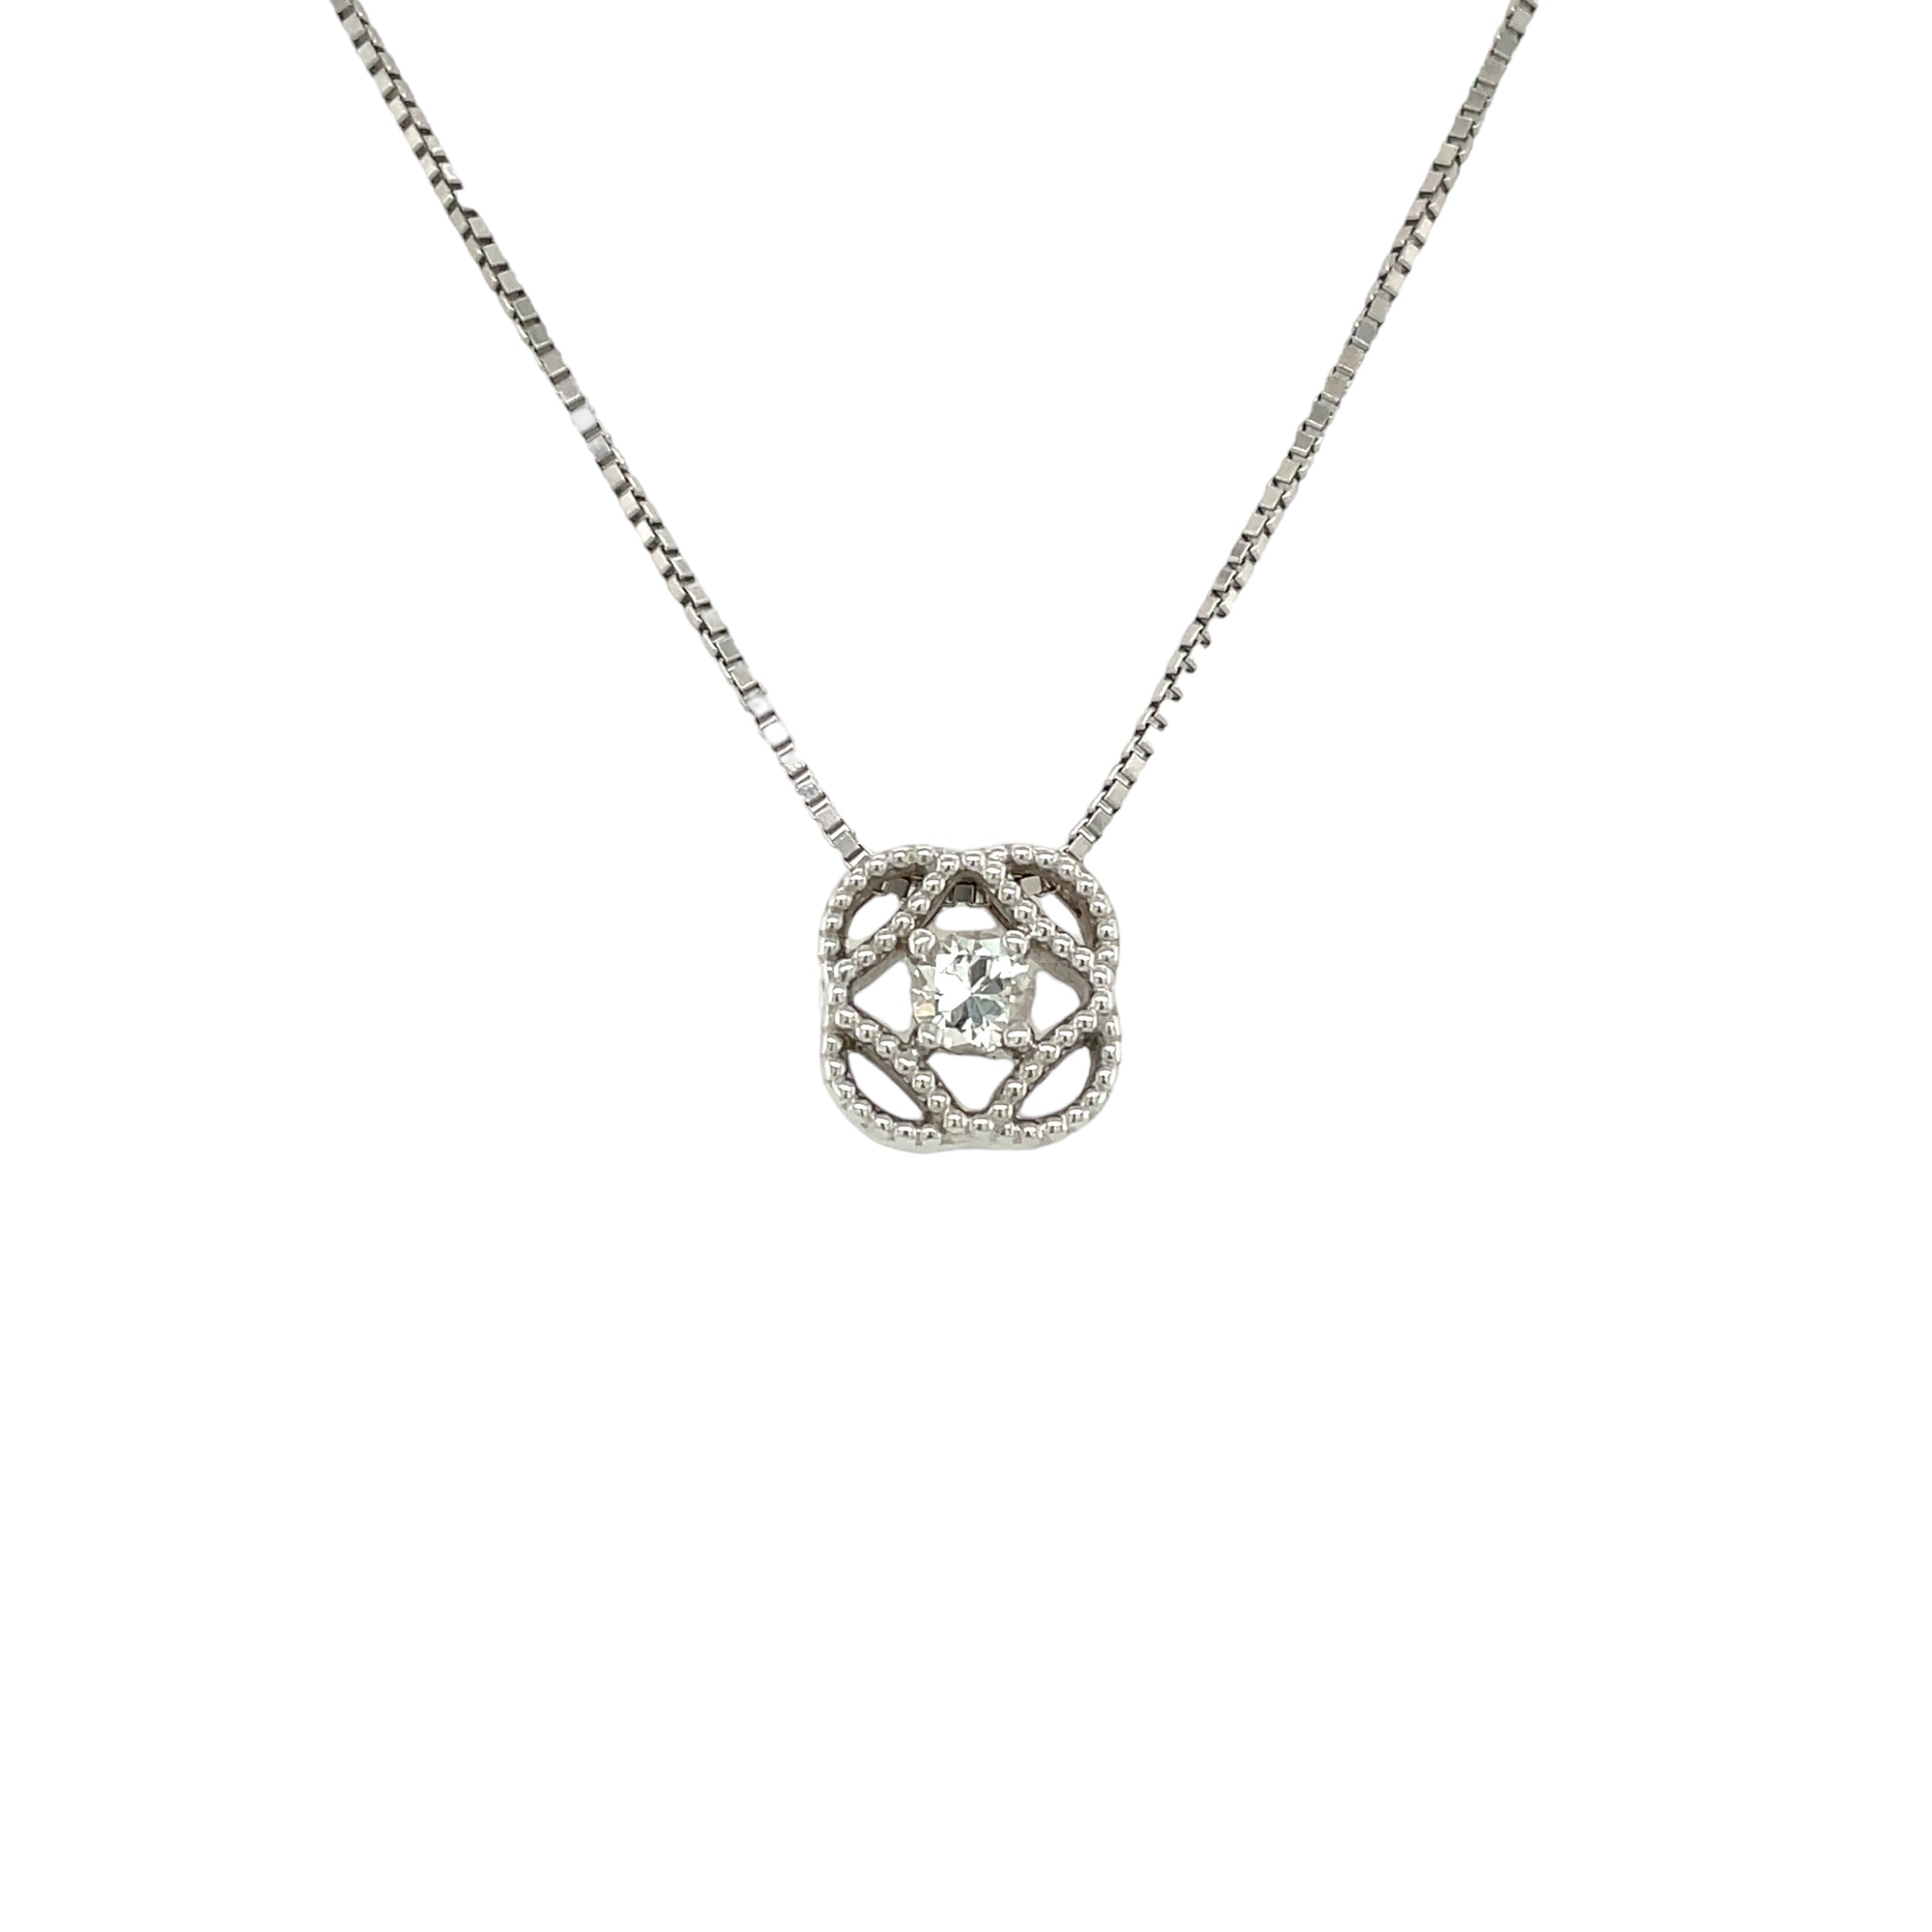 Cari Diamond Necklace in 14k White Gold